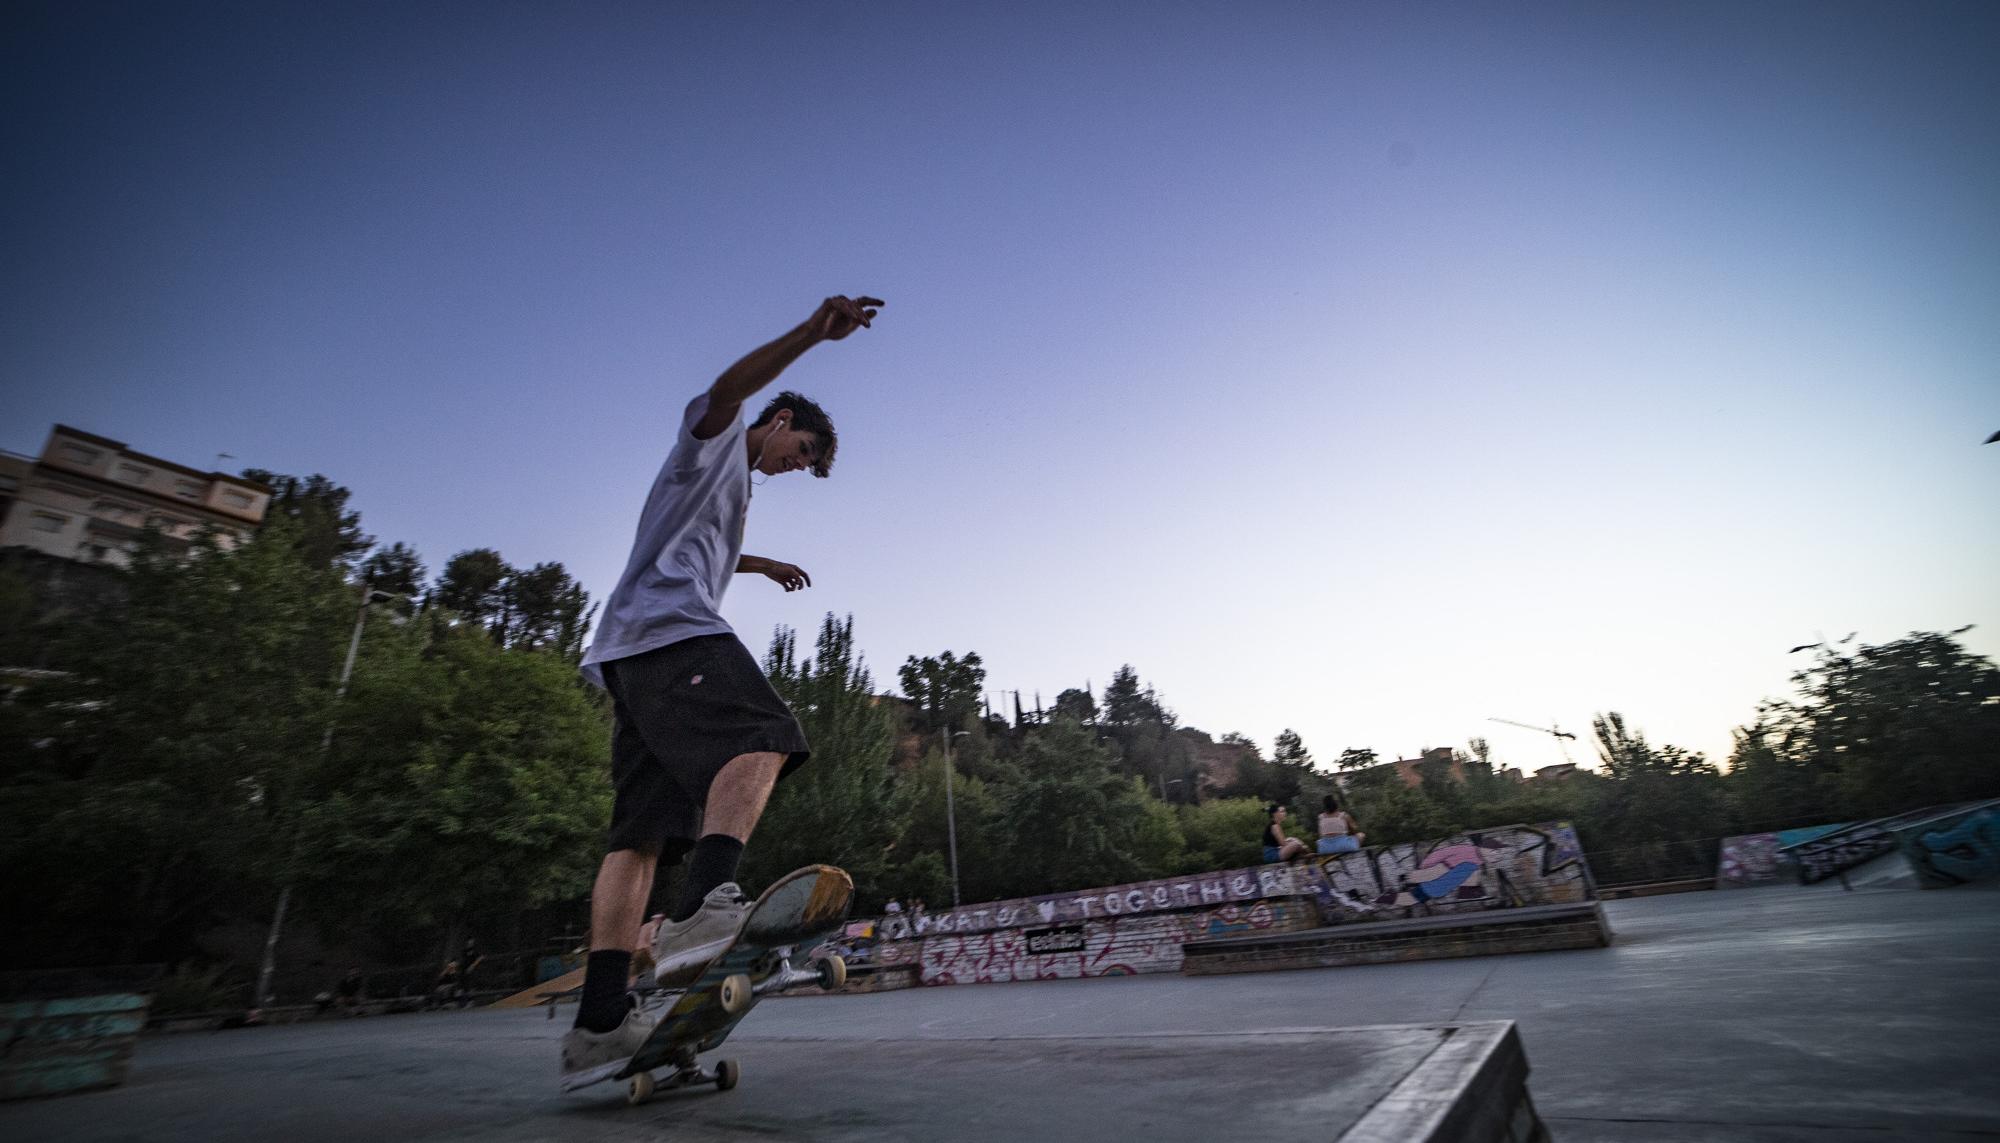 Skaters en el skatepark Bola de Oro, Granada - 12